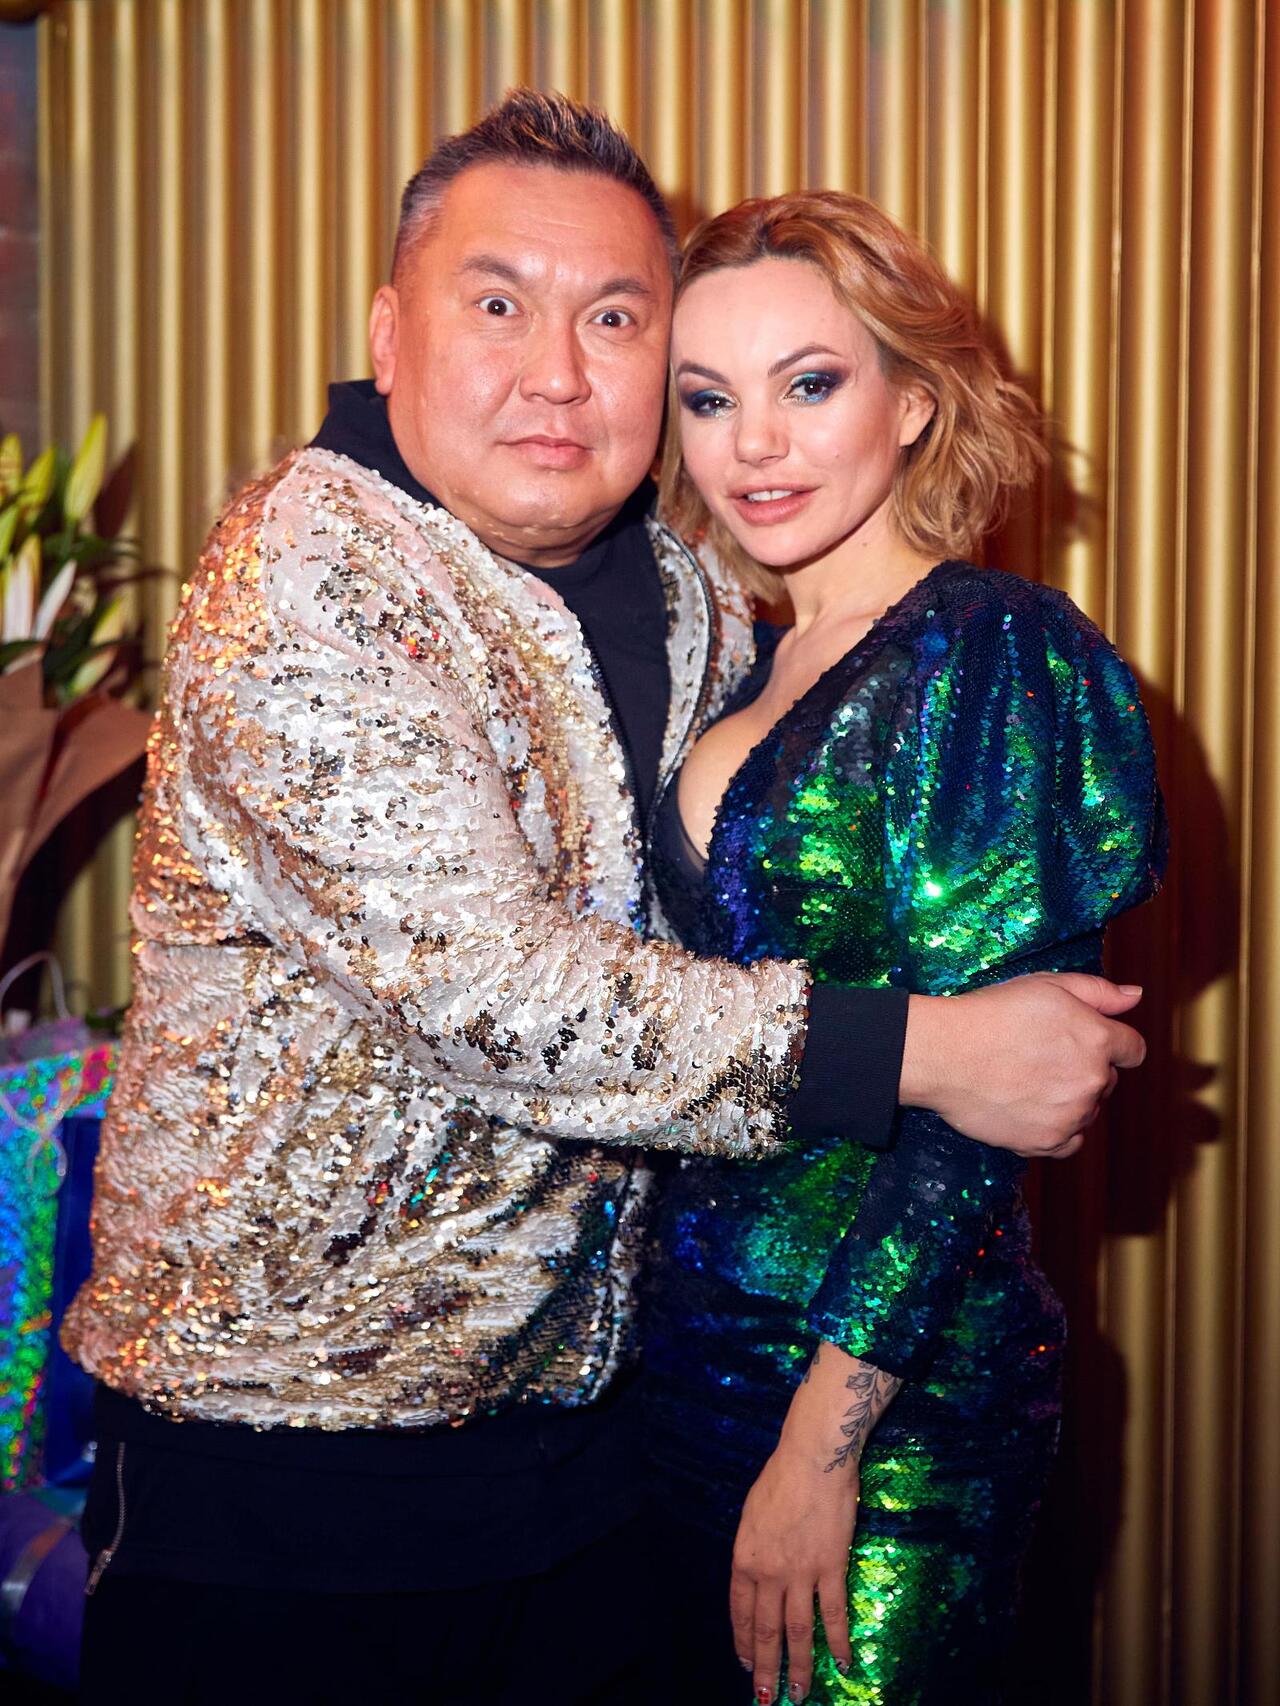 Сергей цигаль женился на ком фото